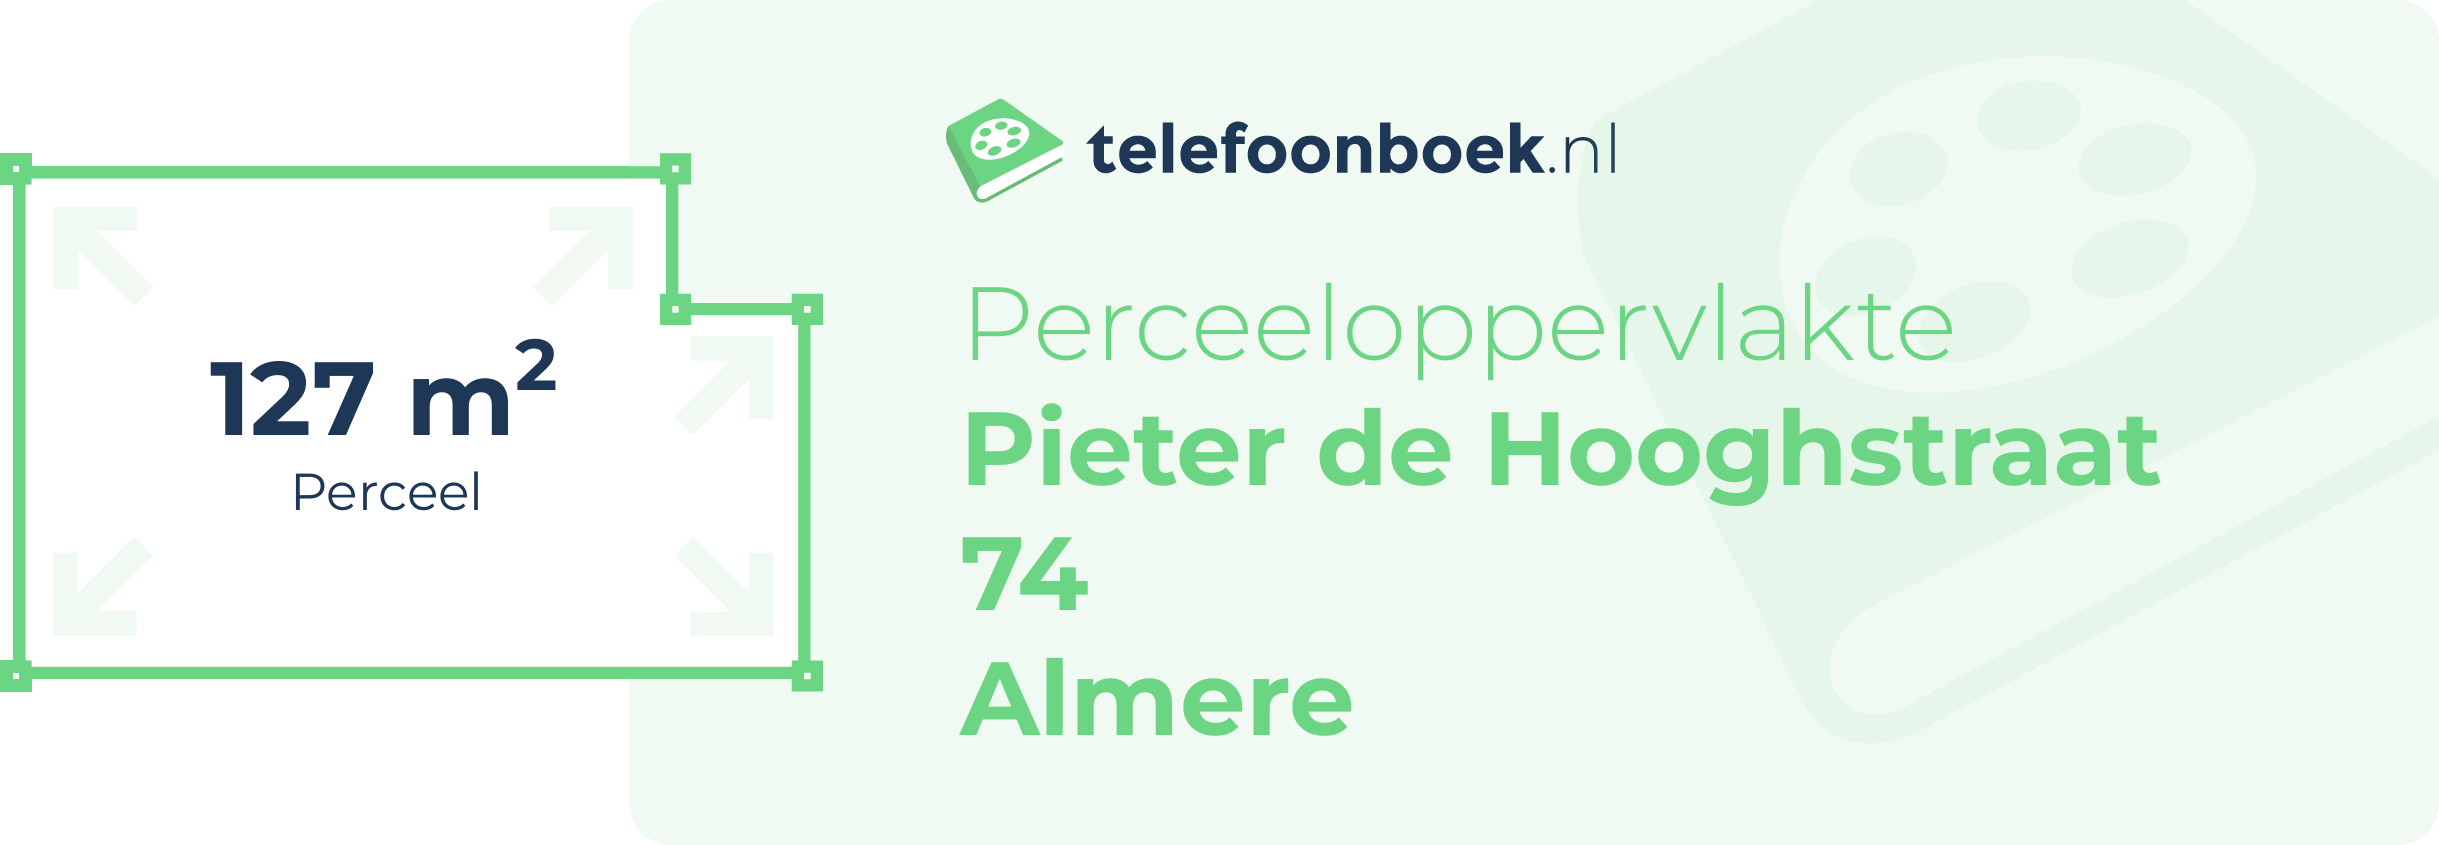 Perceeloppervlakte Pieter De Hooghstraat 74 Almere